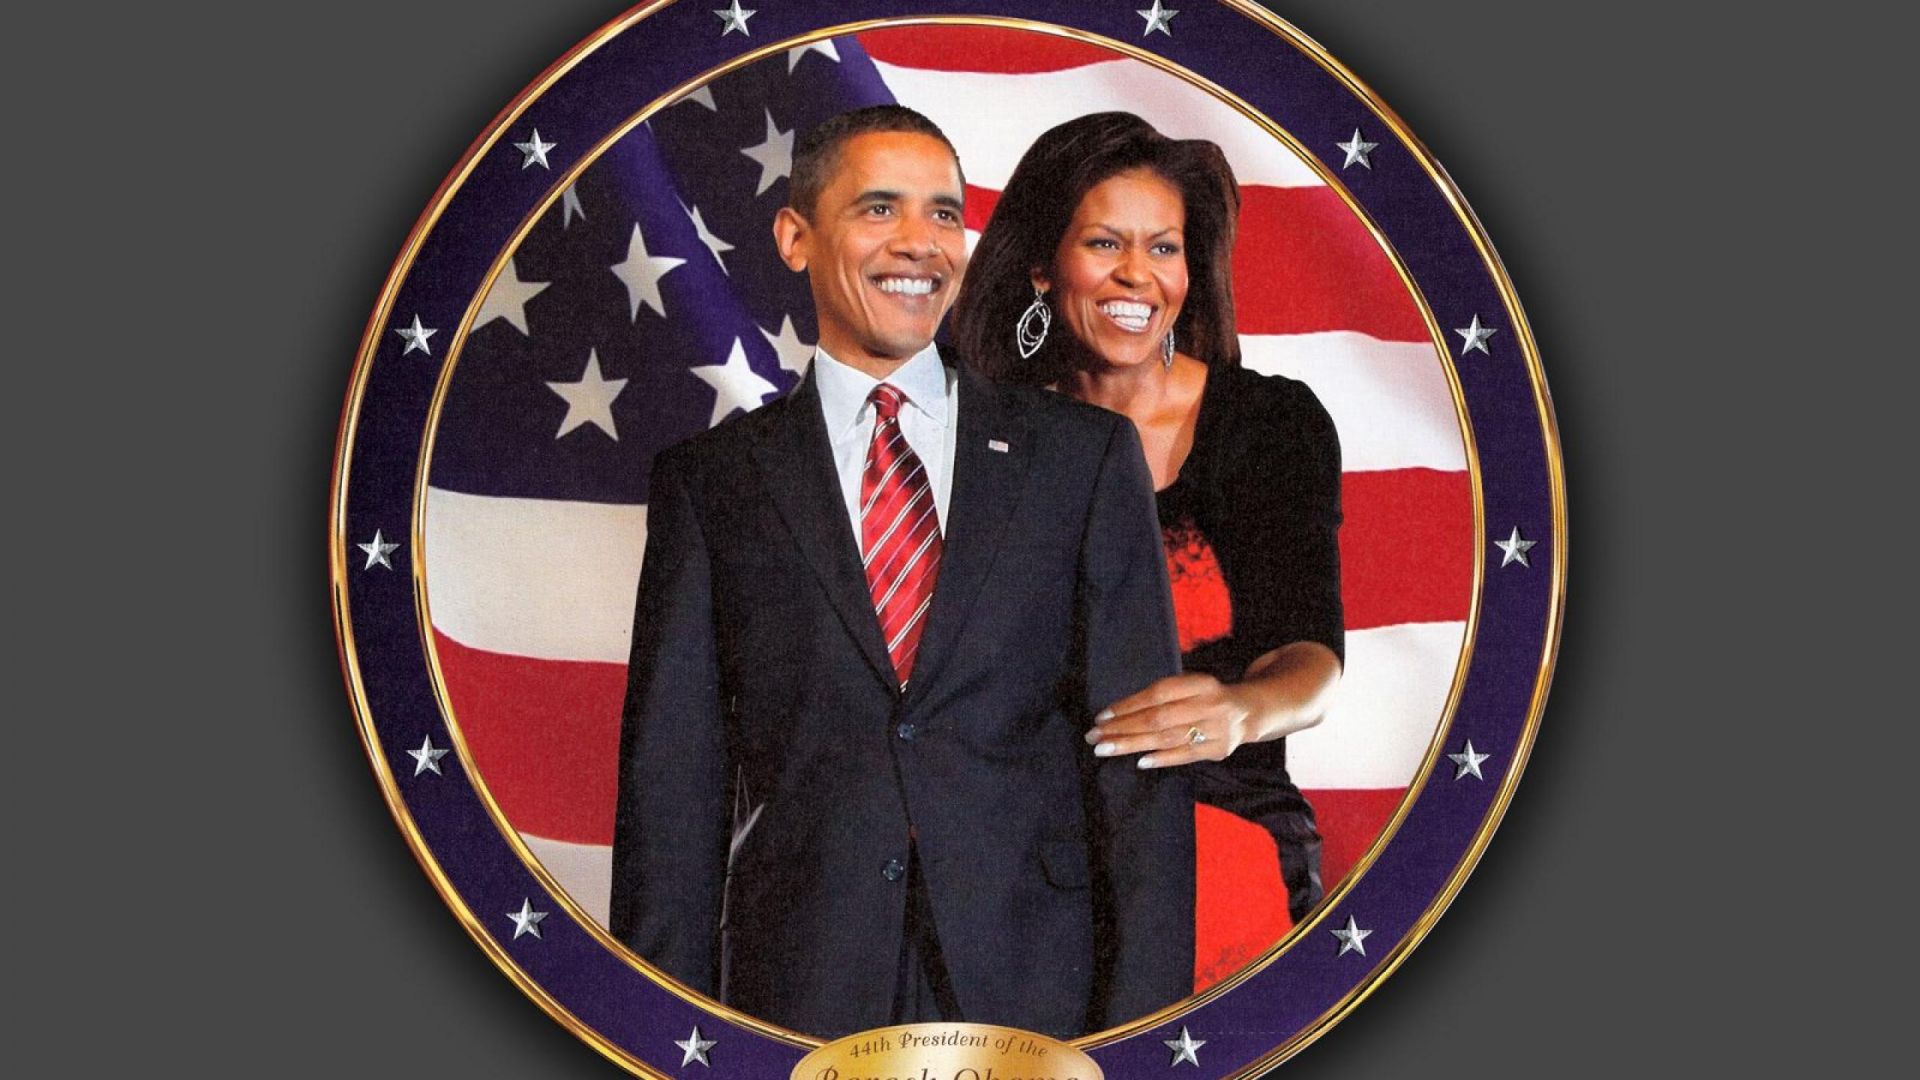 Barack Obama Funny Image Crazy Gallery